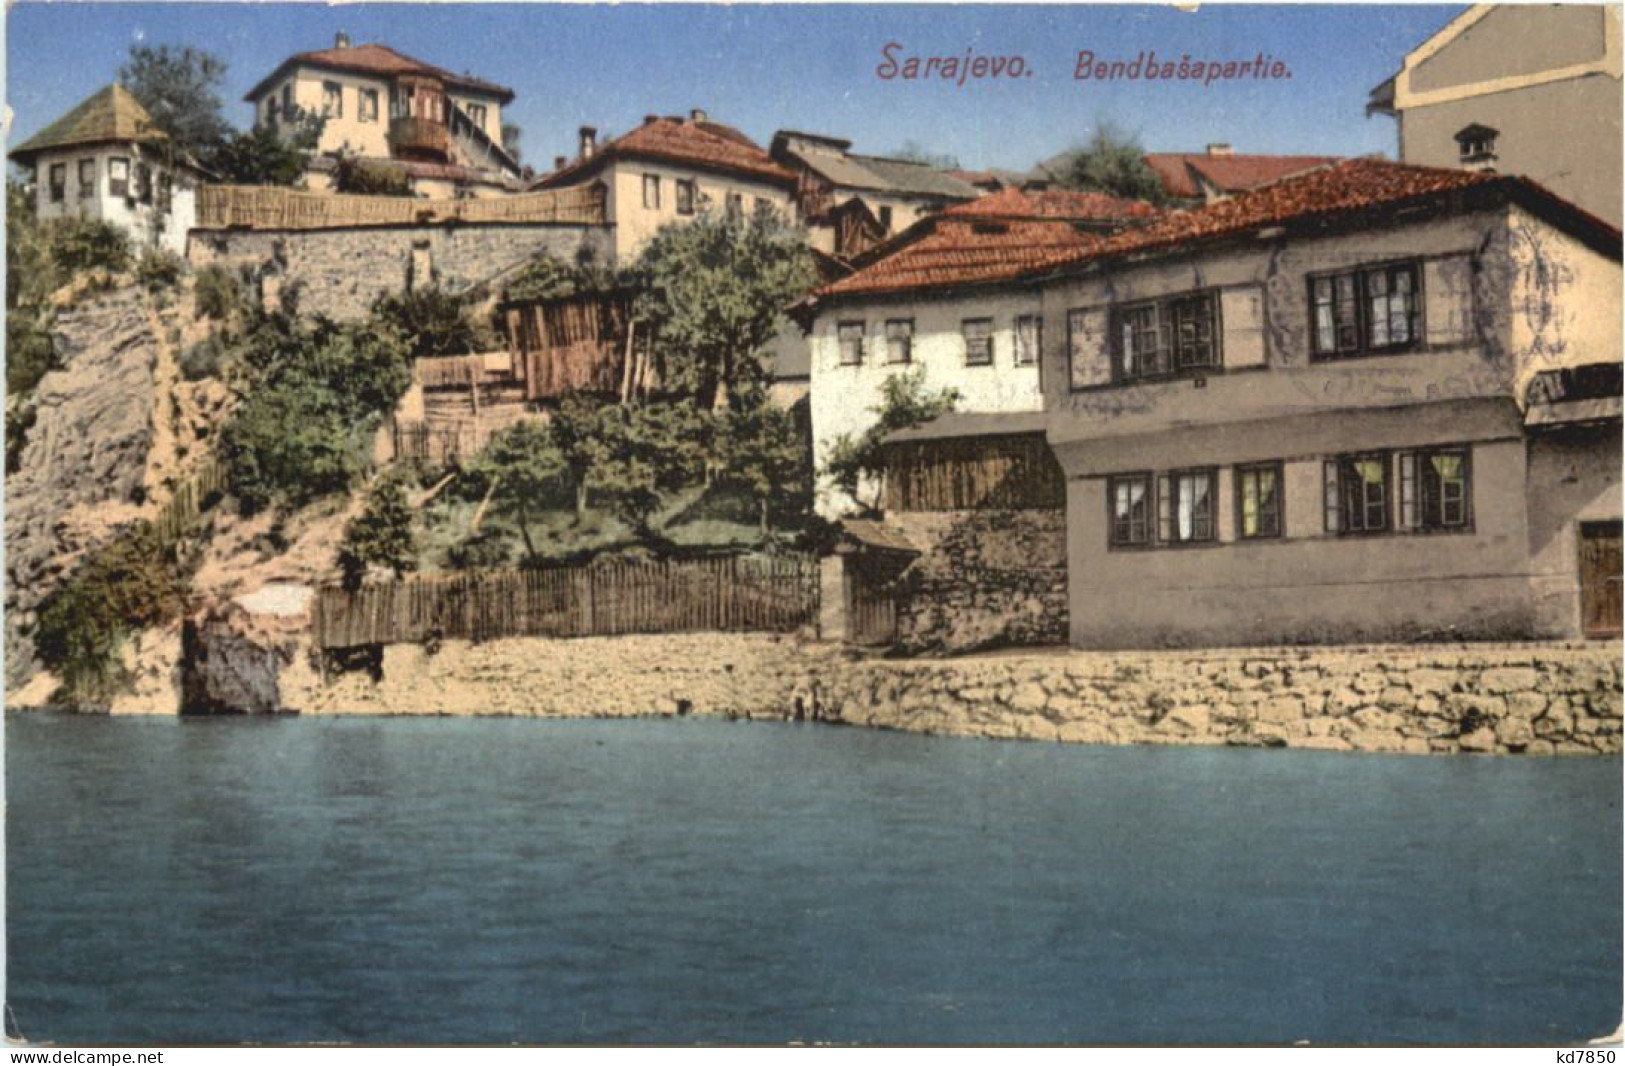 Sarajevo - Bendbasapartie - Bosnien-Herzegowina